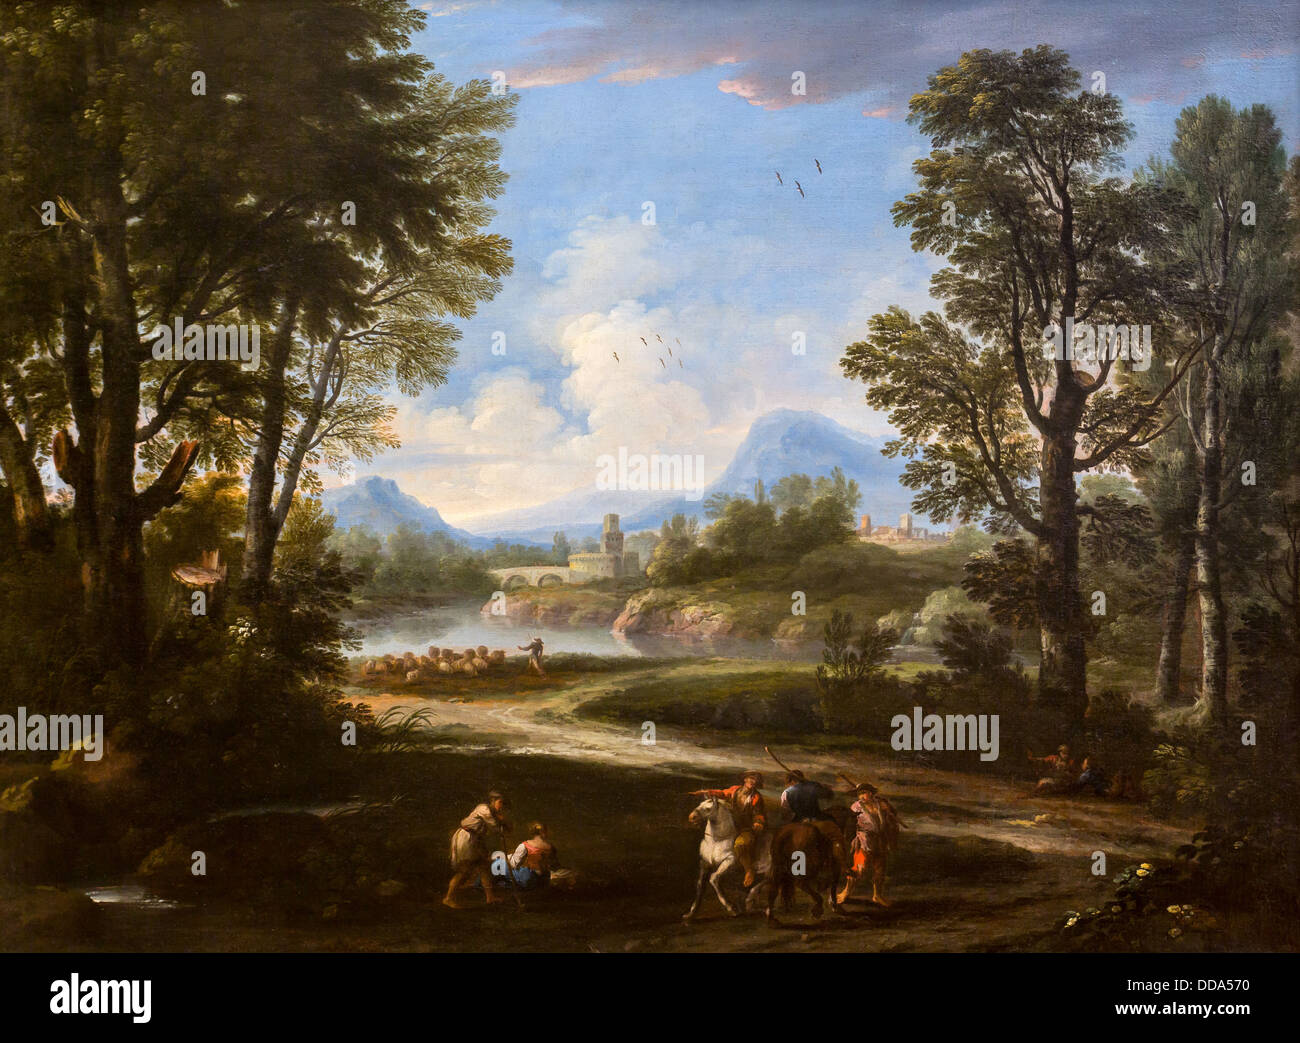 18e siècle - Paysage avec des cavaliers, des voyageurs et des troupeaux, vers 1730 - Andrea Locatelli Huile sur toile Banque D'Images